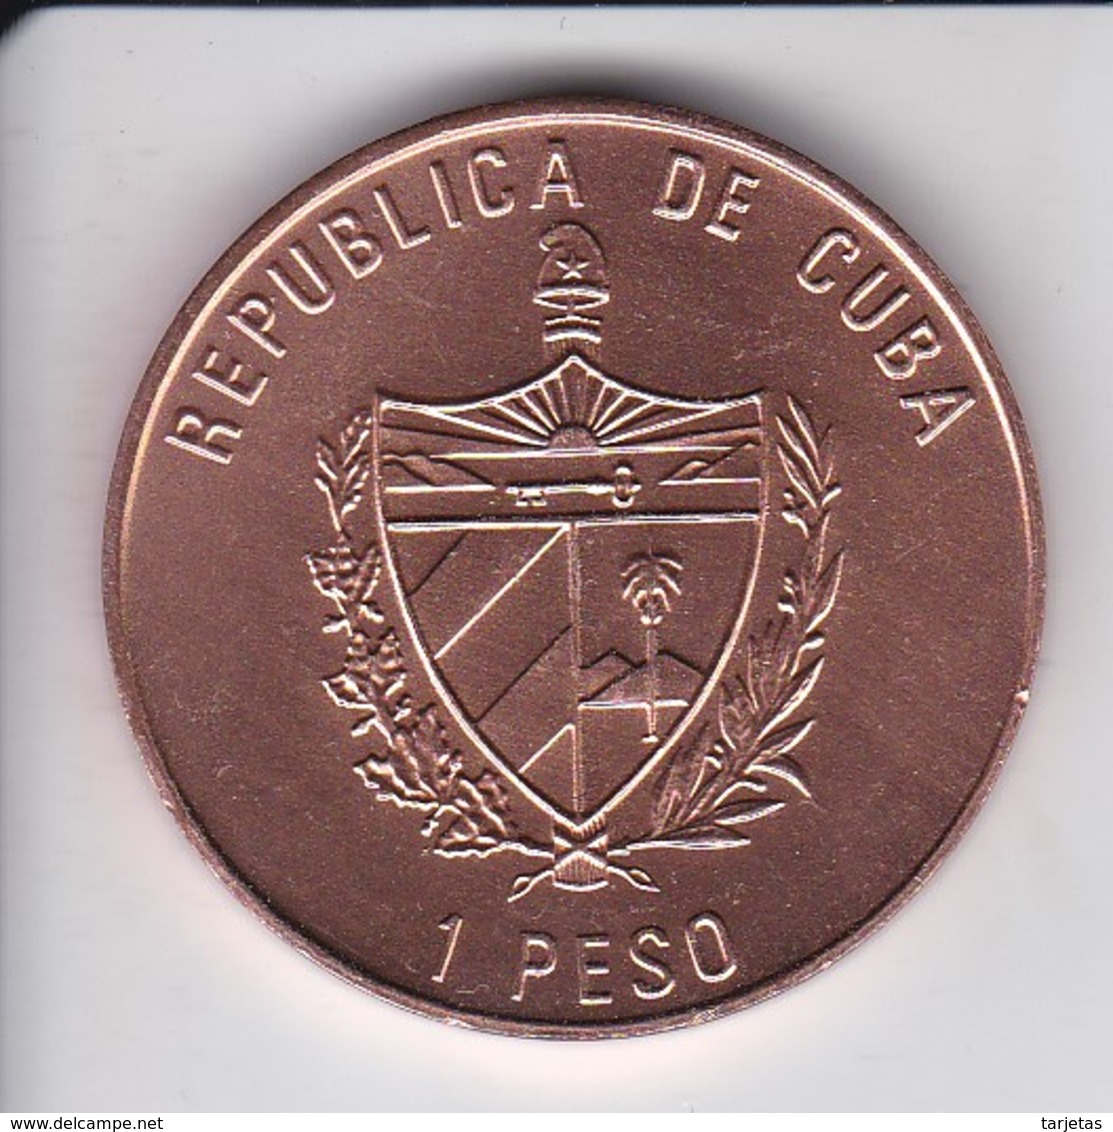 MONEDA DE CUBA DE 1 PESO DEL AÑO 2003 DEL CHE GUEVARA (COIN) SIN CIRCULAR-UNCIRCULATED - Cuba